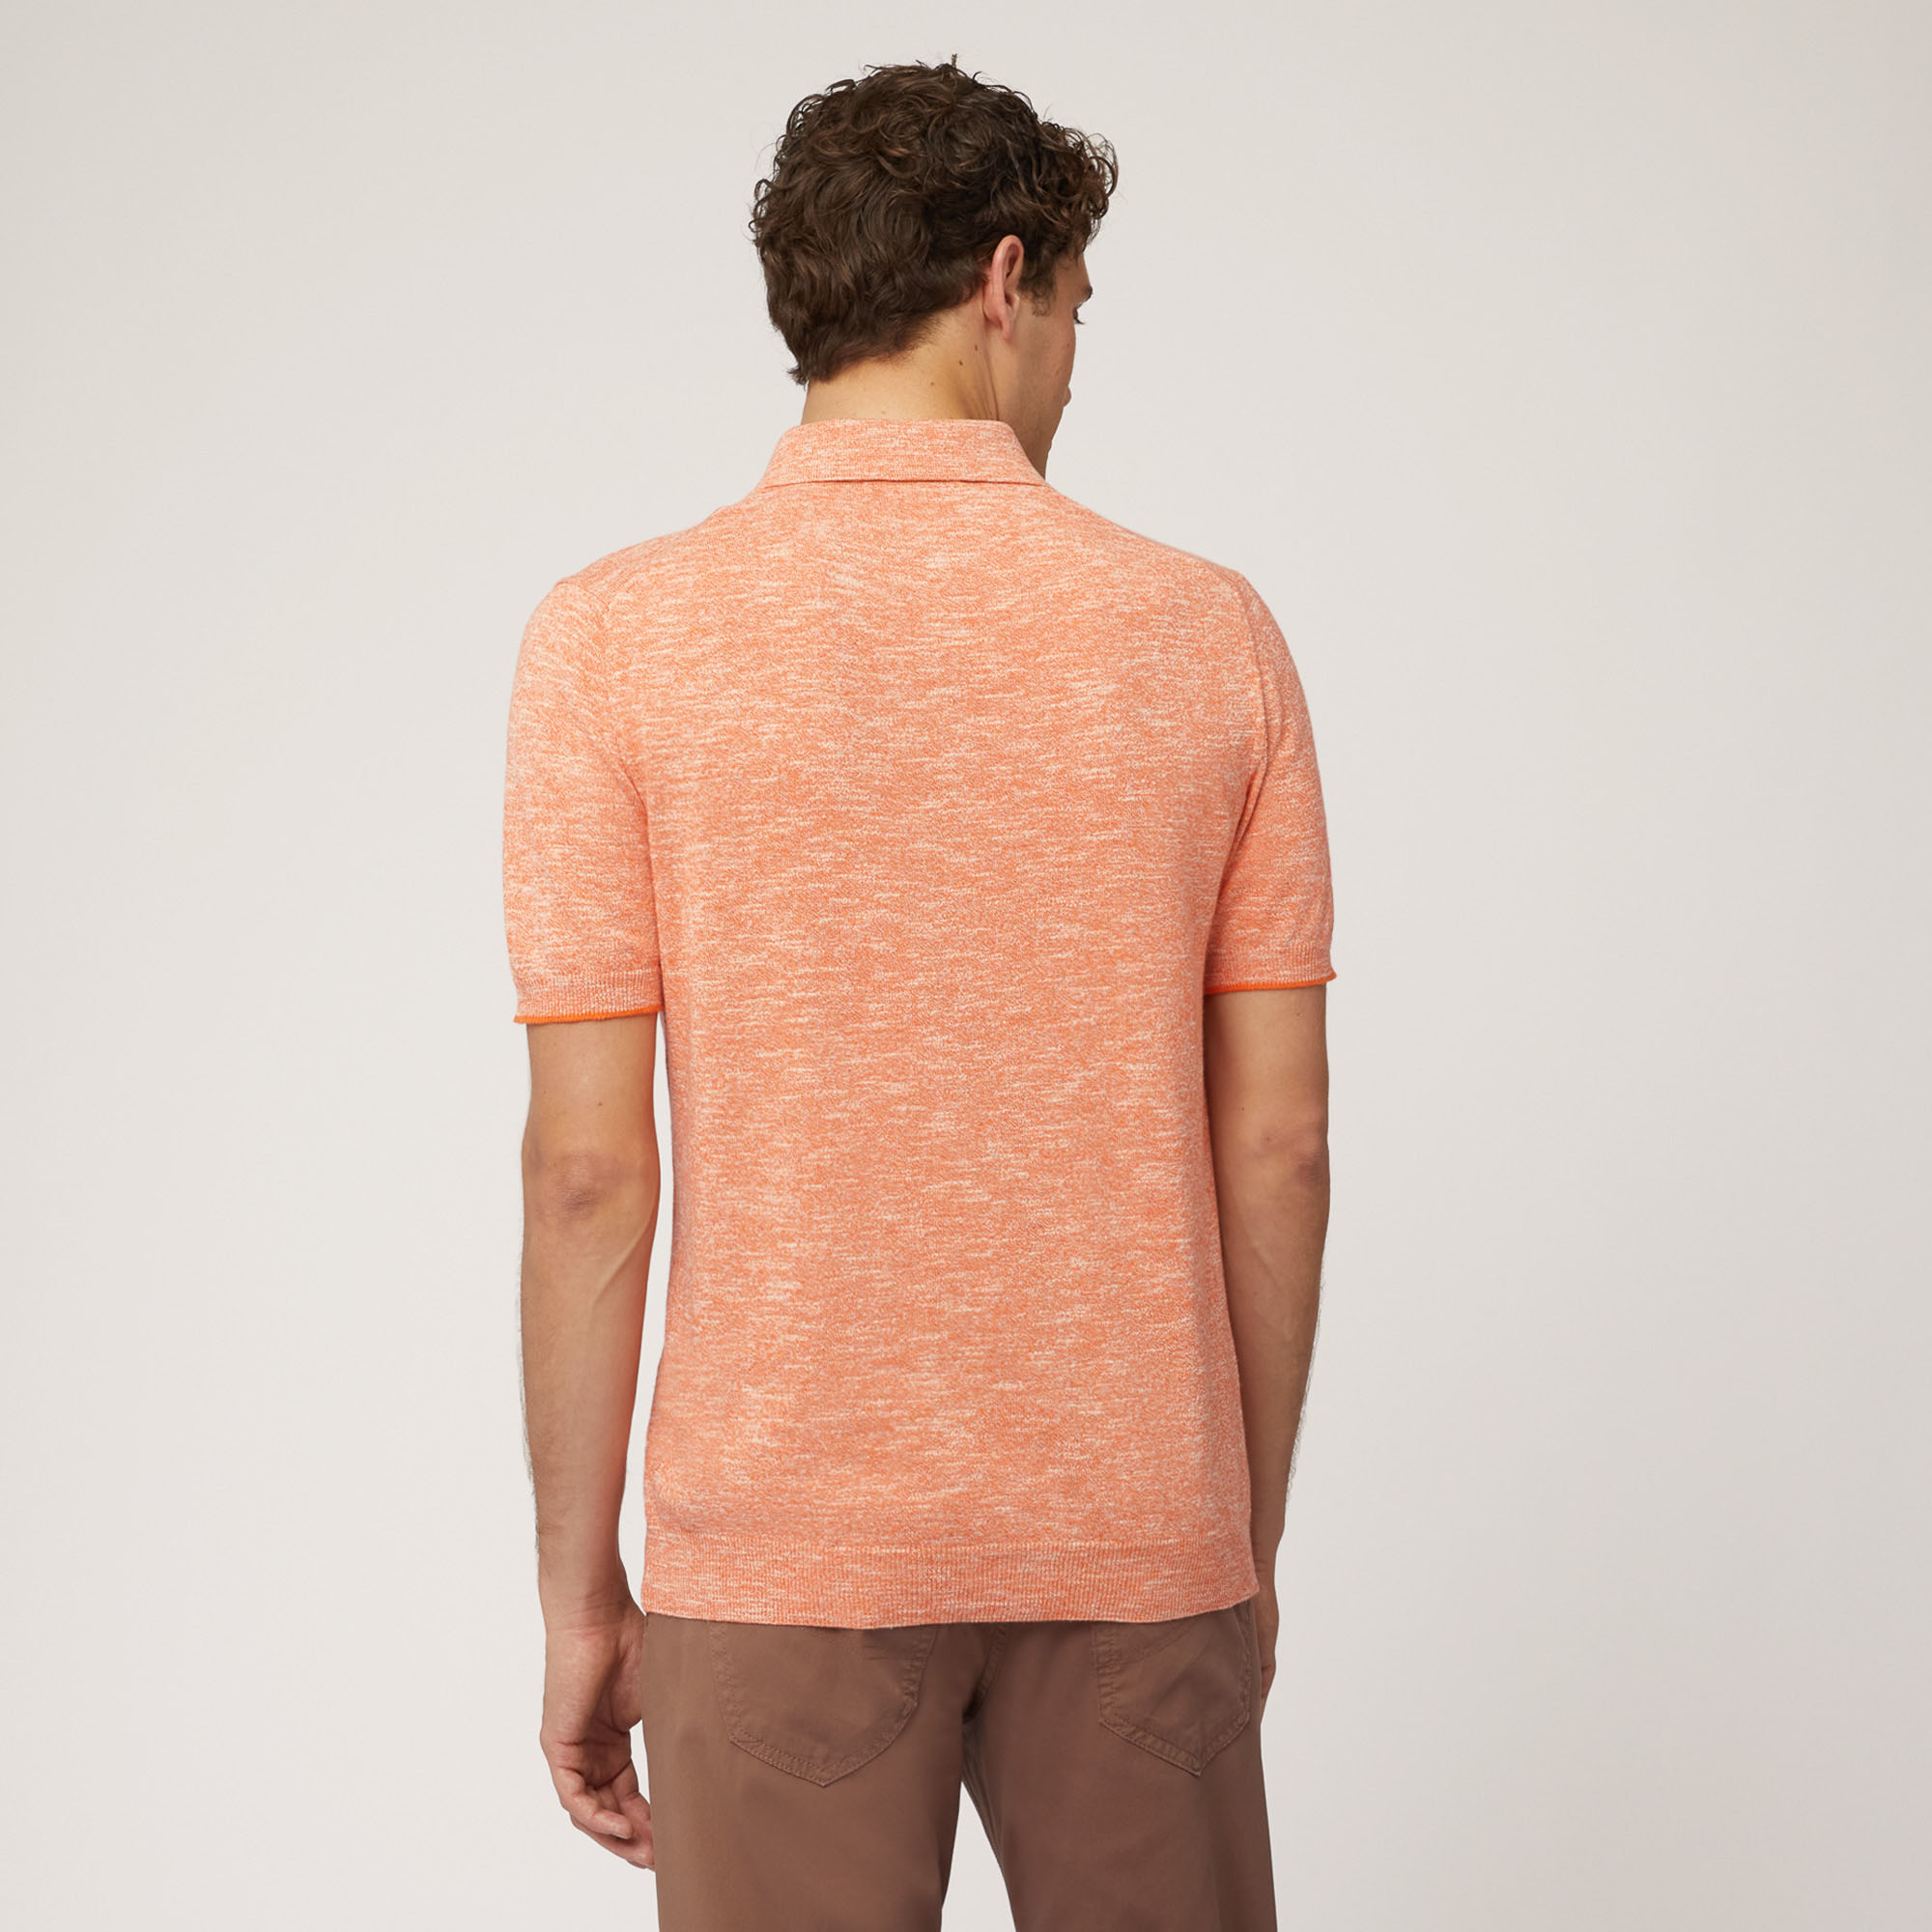 Poloshirt aus Baumwoll-Leinen-Tweed, Orange, large image number 1